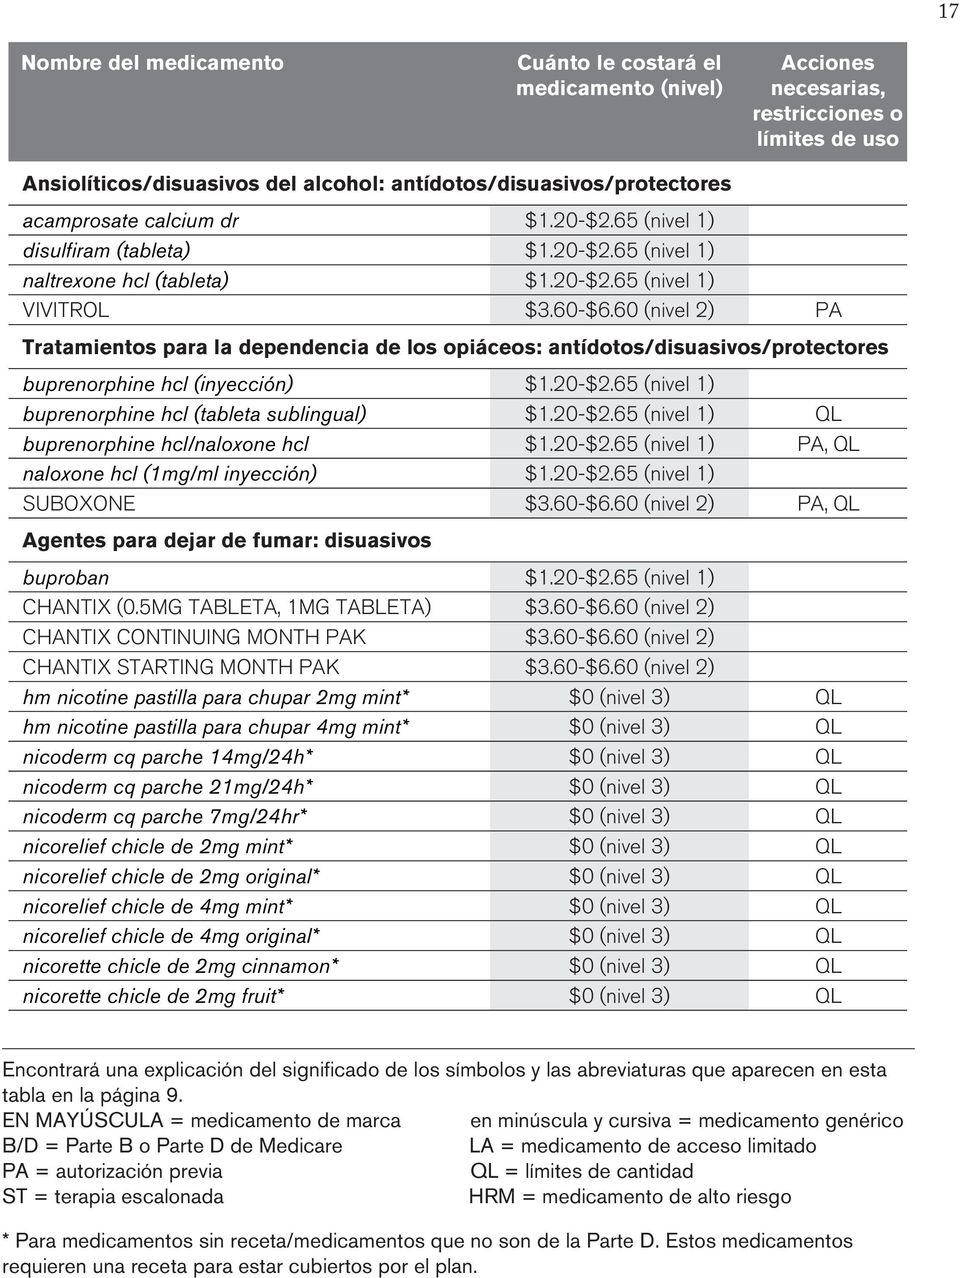 60 (nivel 2) PA Tratamientos para la dependencia de los opiáceos: antídotos/disuasivos/protectores Buprenorphine HCl buprenorphine hcl (inyección) Buprenorphine HCl buprenorphine hcl (tableta